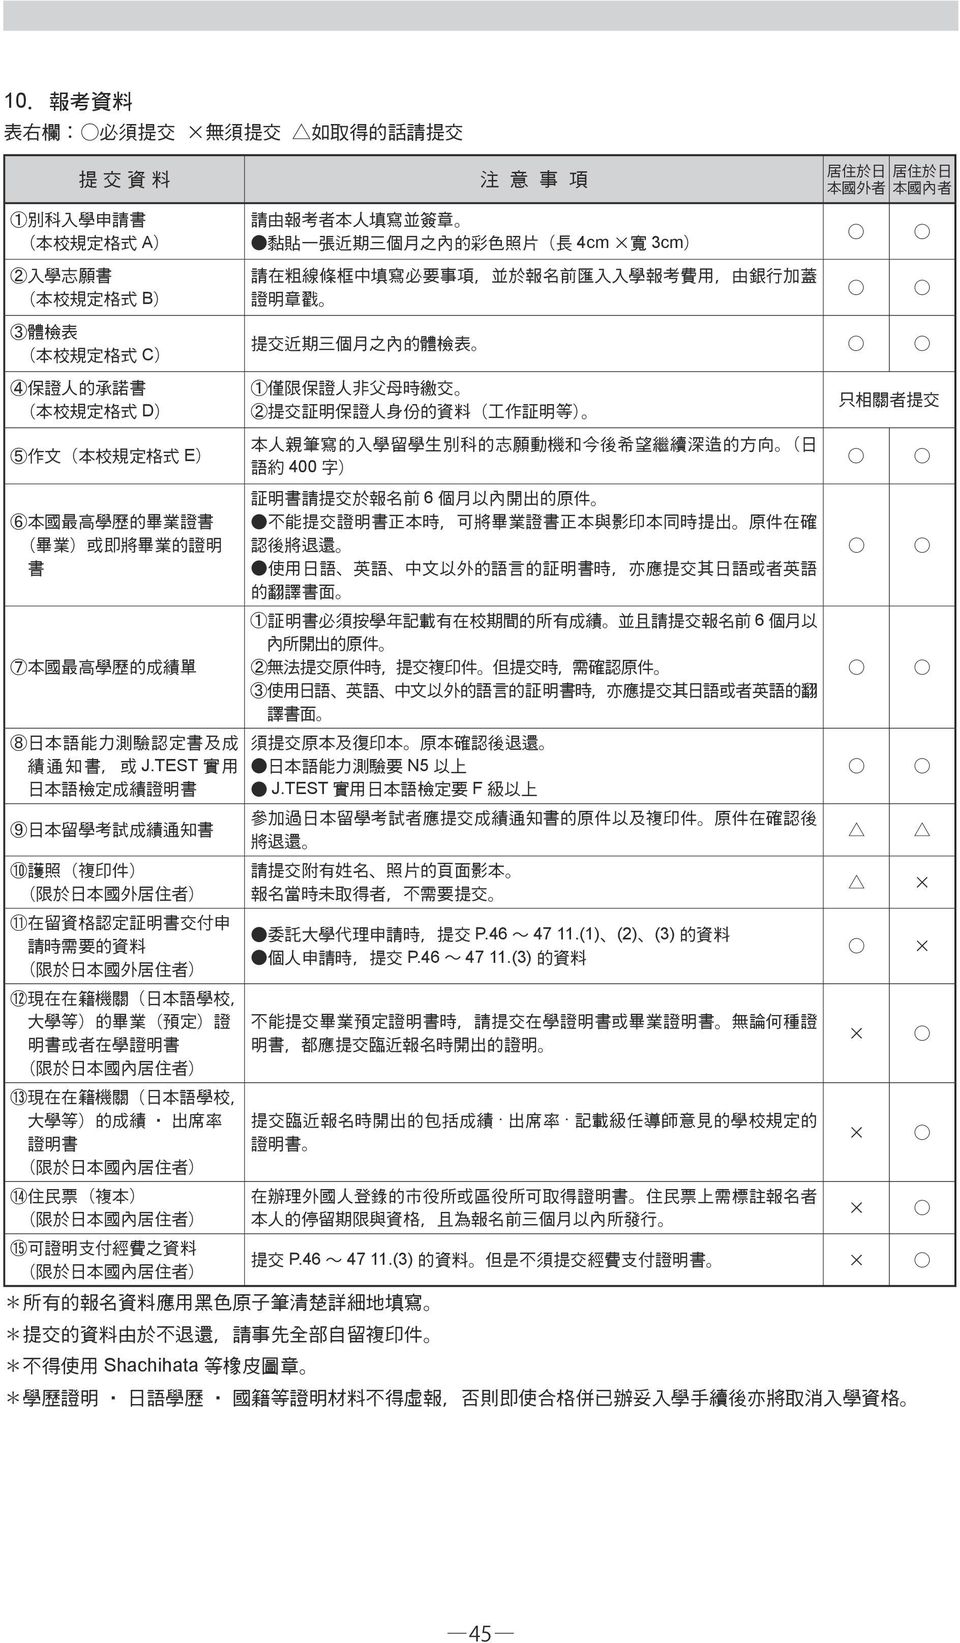 TEST 實 用 日 本 語 檢 定 成 績 證 明 書 9 日 本 留 學 考 試 成 績 通 知 書 10 護 照 複 印 件 限 於 日 本 國 外 居 住 者 11 在 留 資 格 認 定 証 明 書 交 付 申 請 時 需 要 的 資 料 限 於 日 本 國 外 居 住 者 請 由 報 考 者 本 人 填 寫 並 簽 章 黏 貼 一 張 近 期 三 個 月 之 內 的 彩 色 照 片